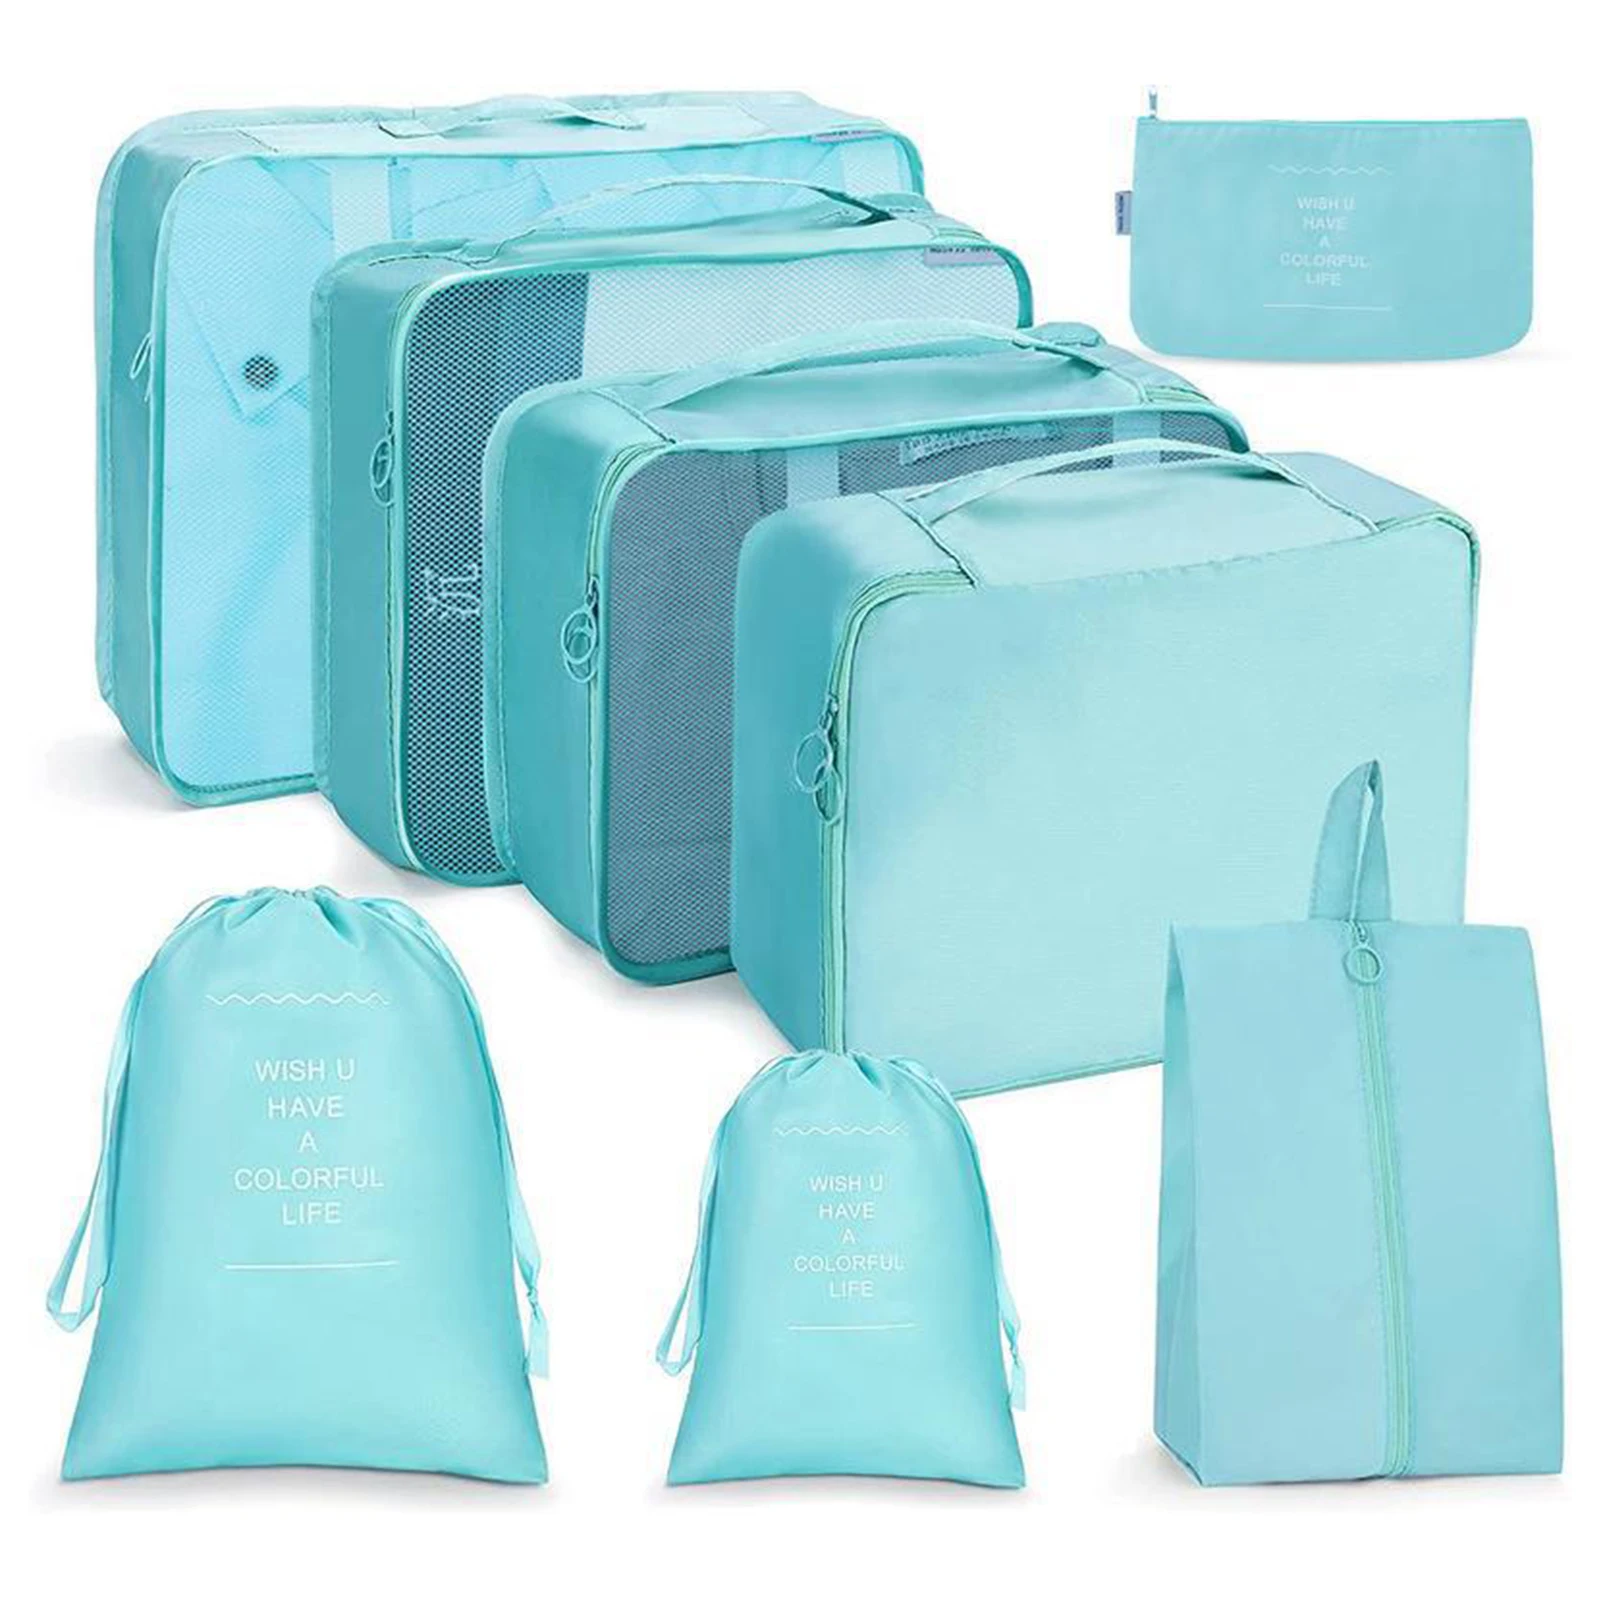 

Комплект из 8 водонепроницаемых сумок для путешествий, женское белье, сумки на шнурке для семьи, друзей, подарков соседям